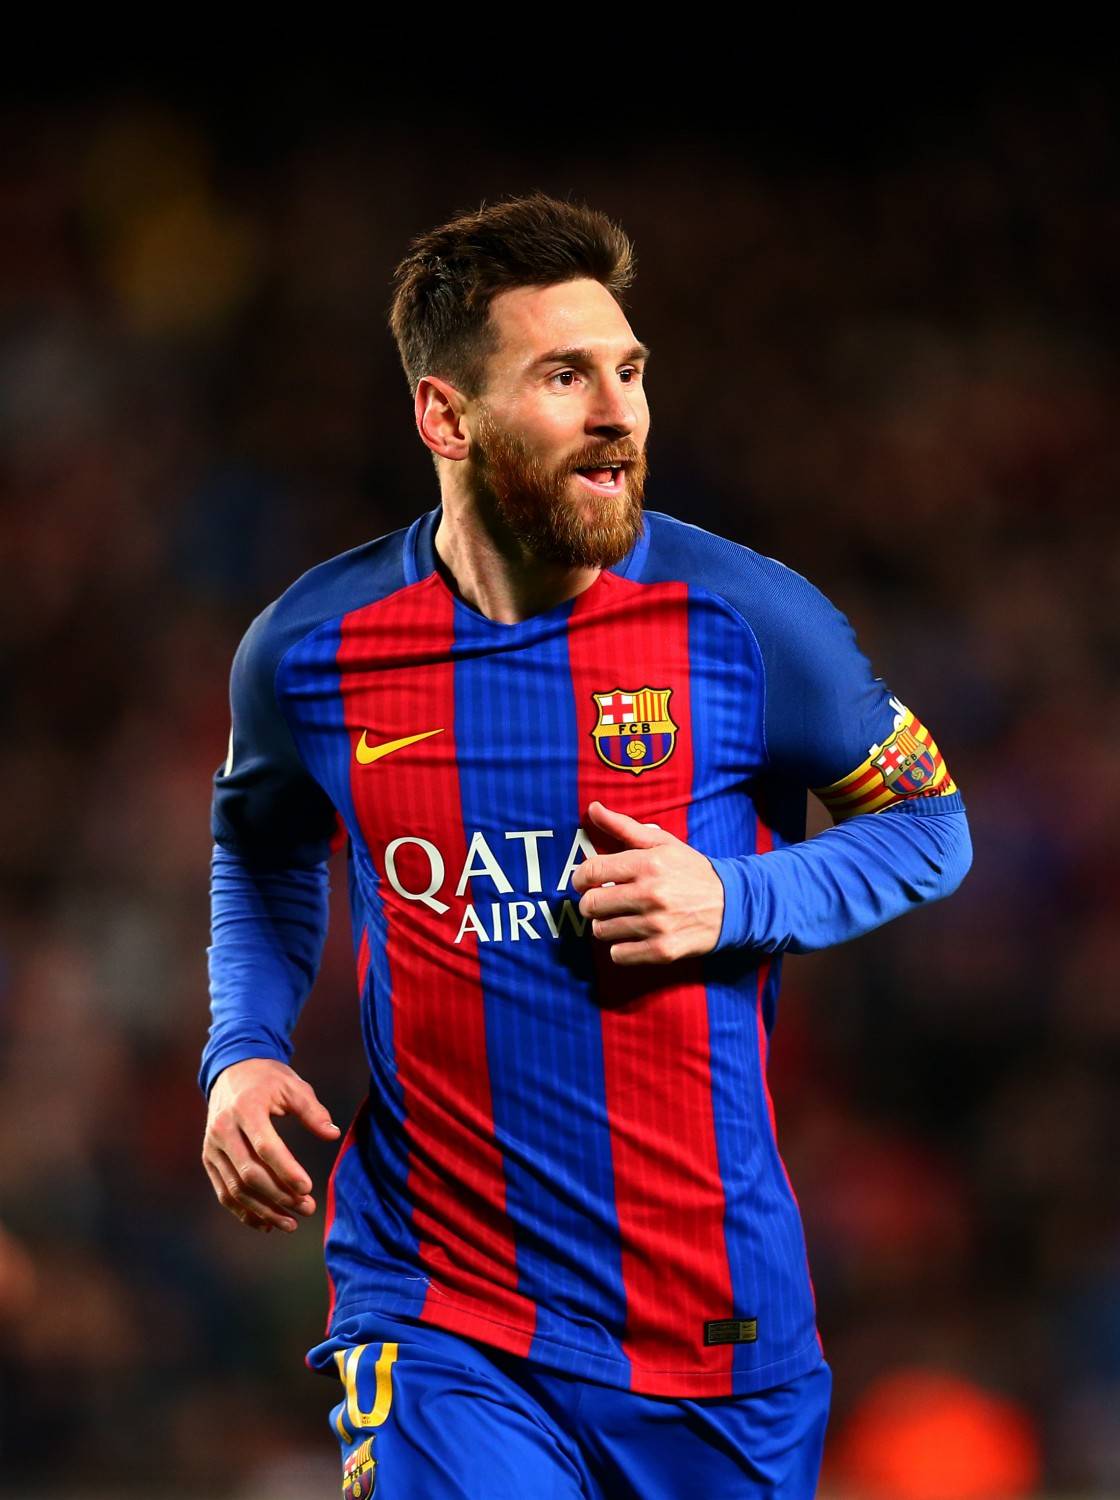 Ancora guai per fratello Messi:  arrestato per lesioni e minacce